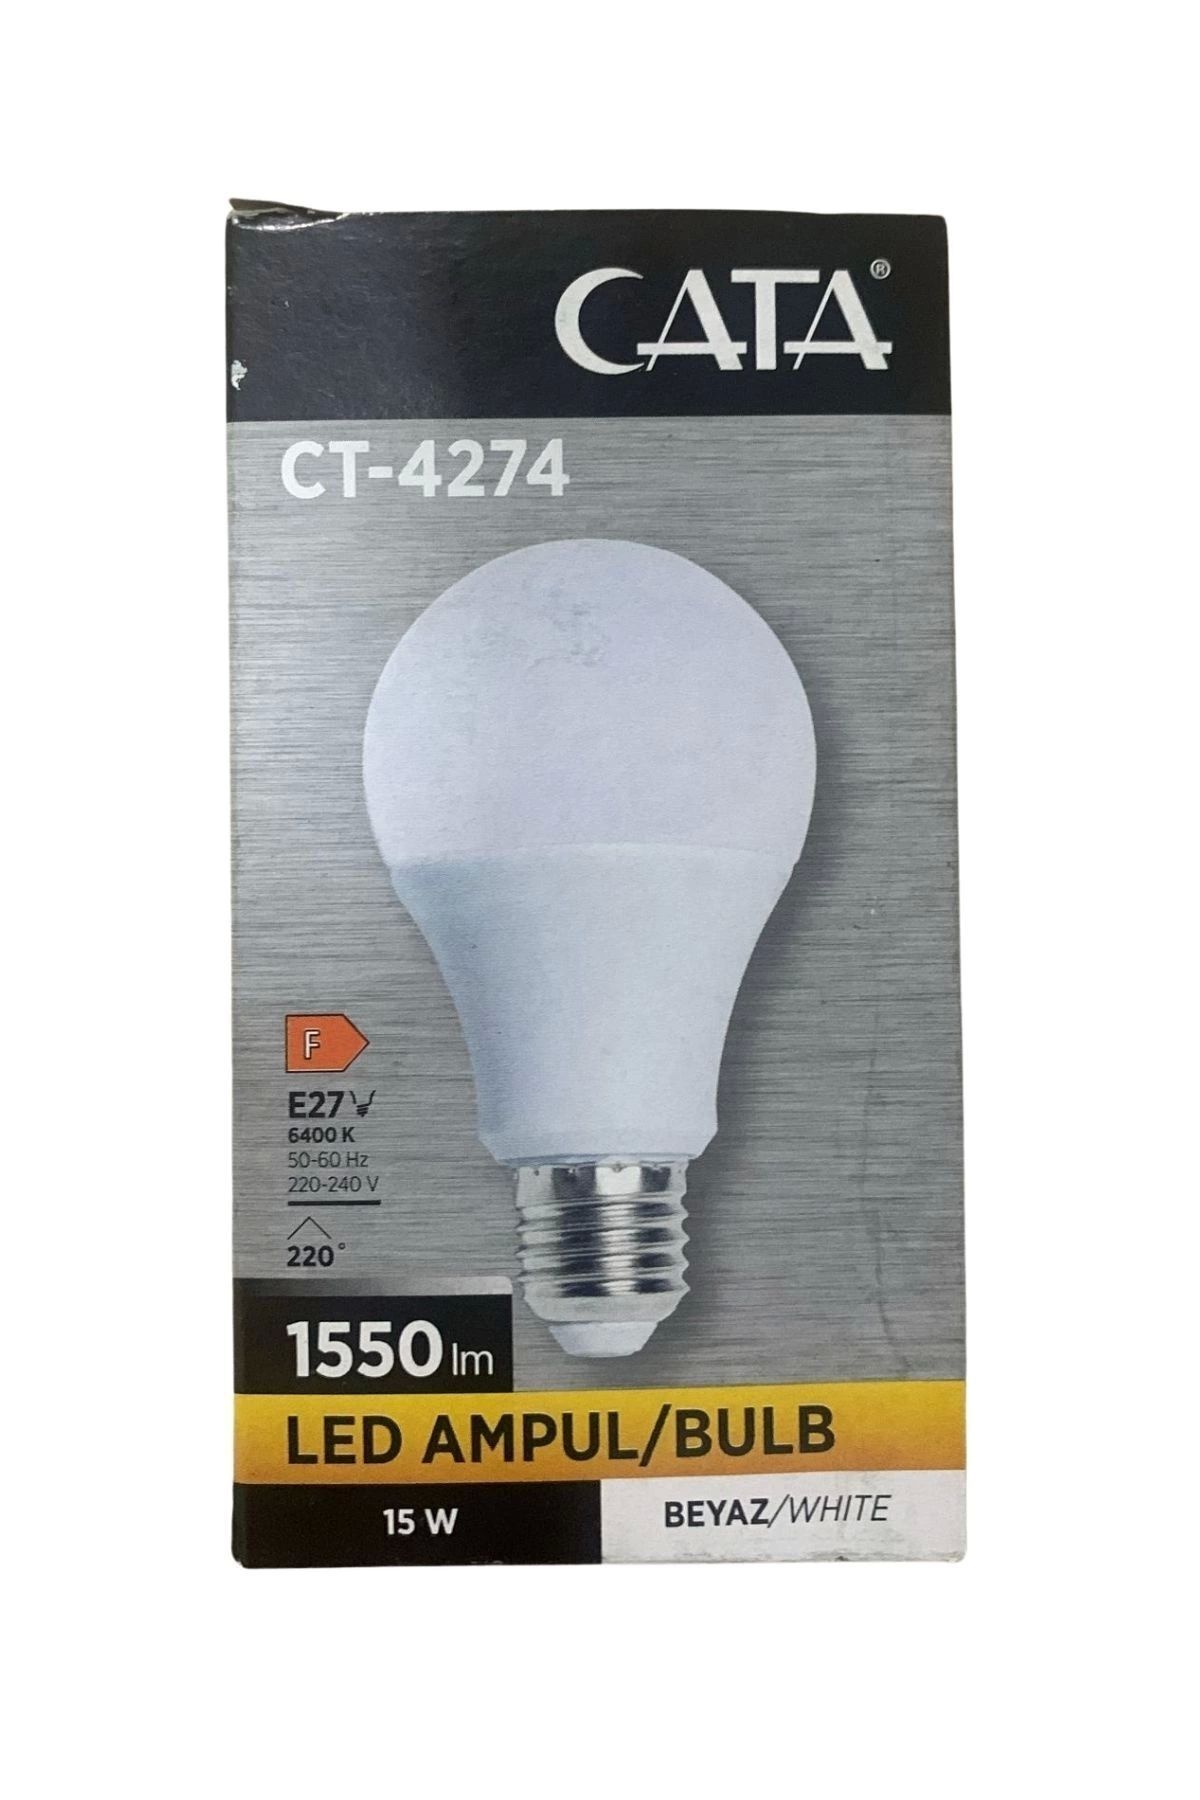 Cata Ct-4274b 15w Led Ampül E27 6400k Beyaz